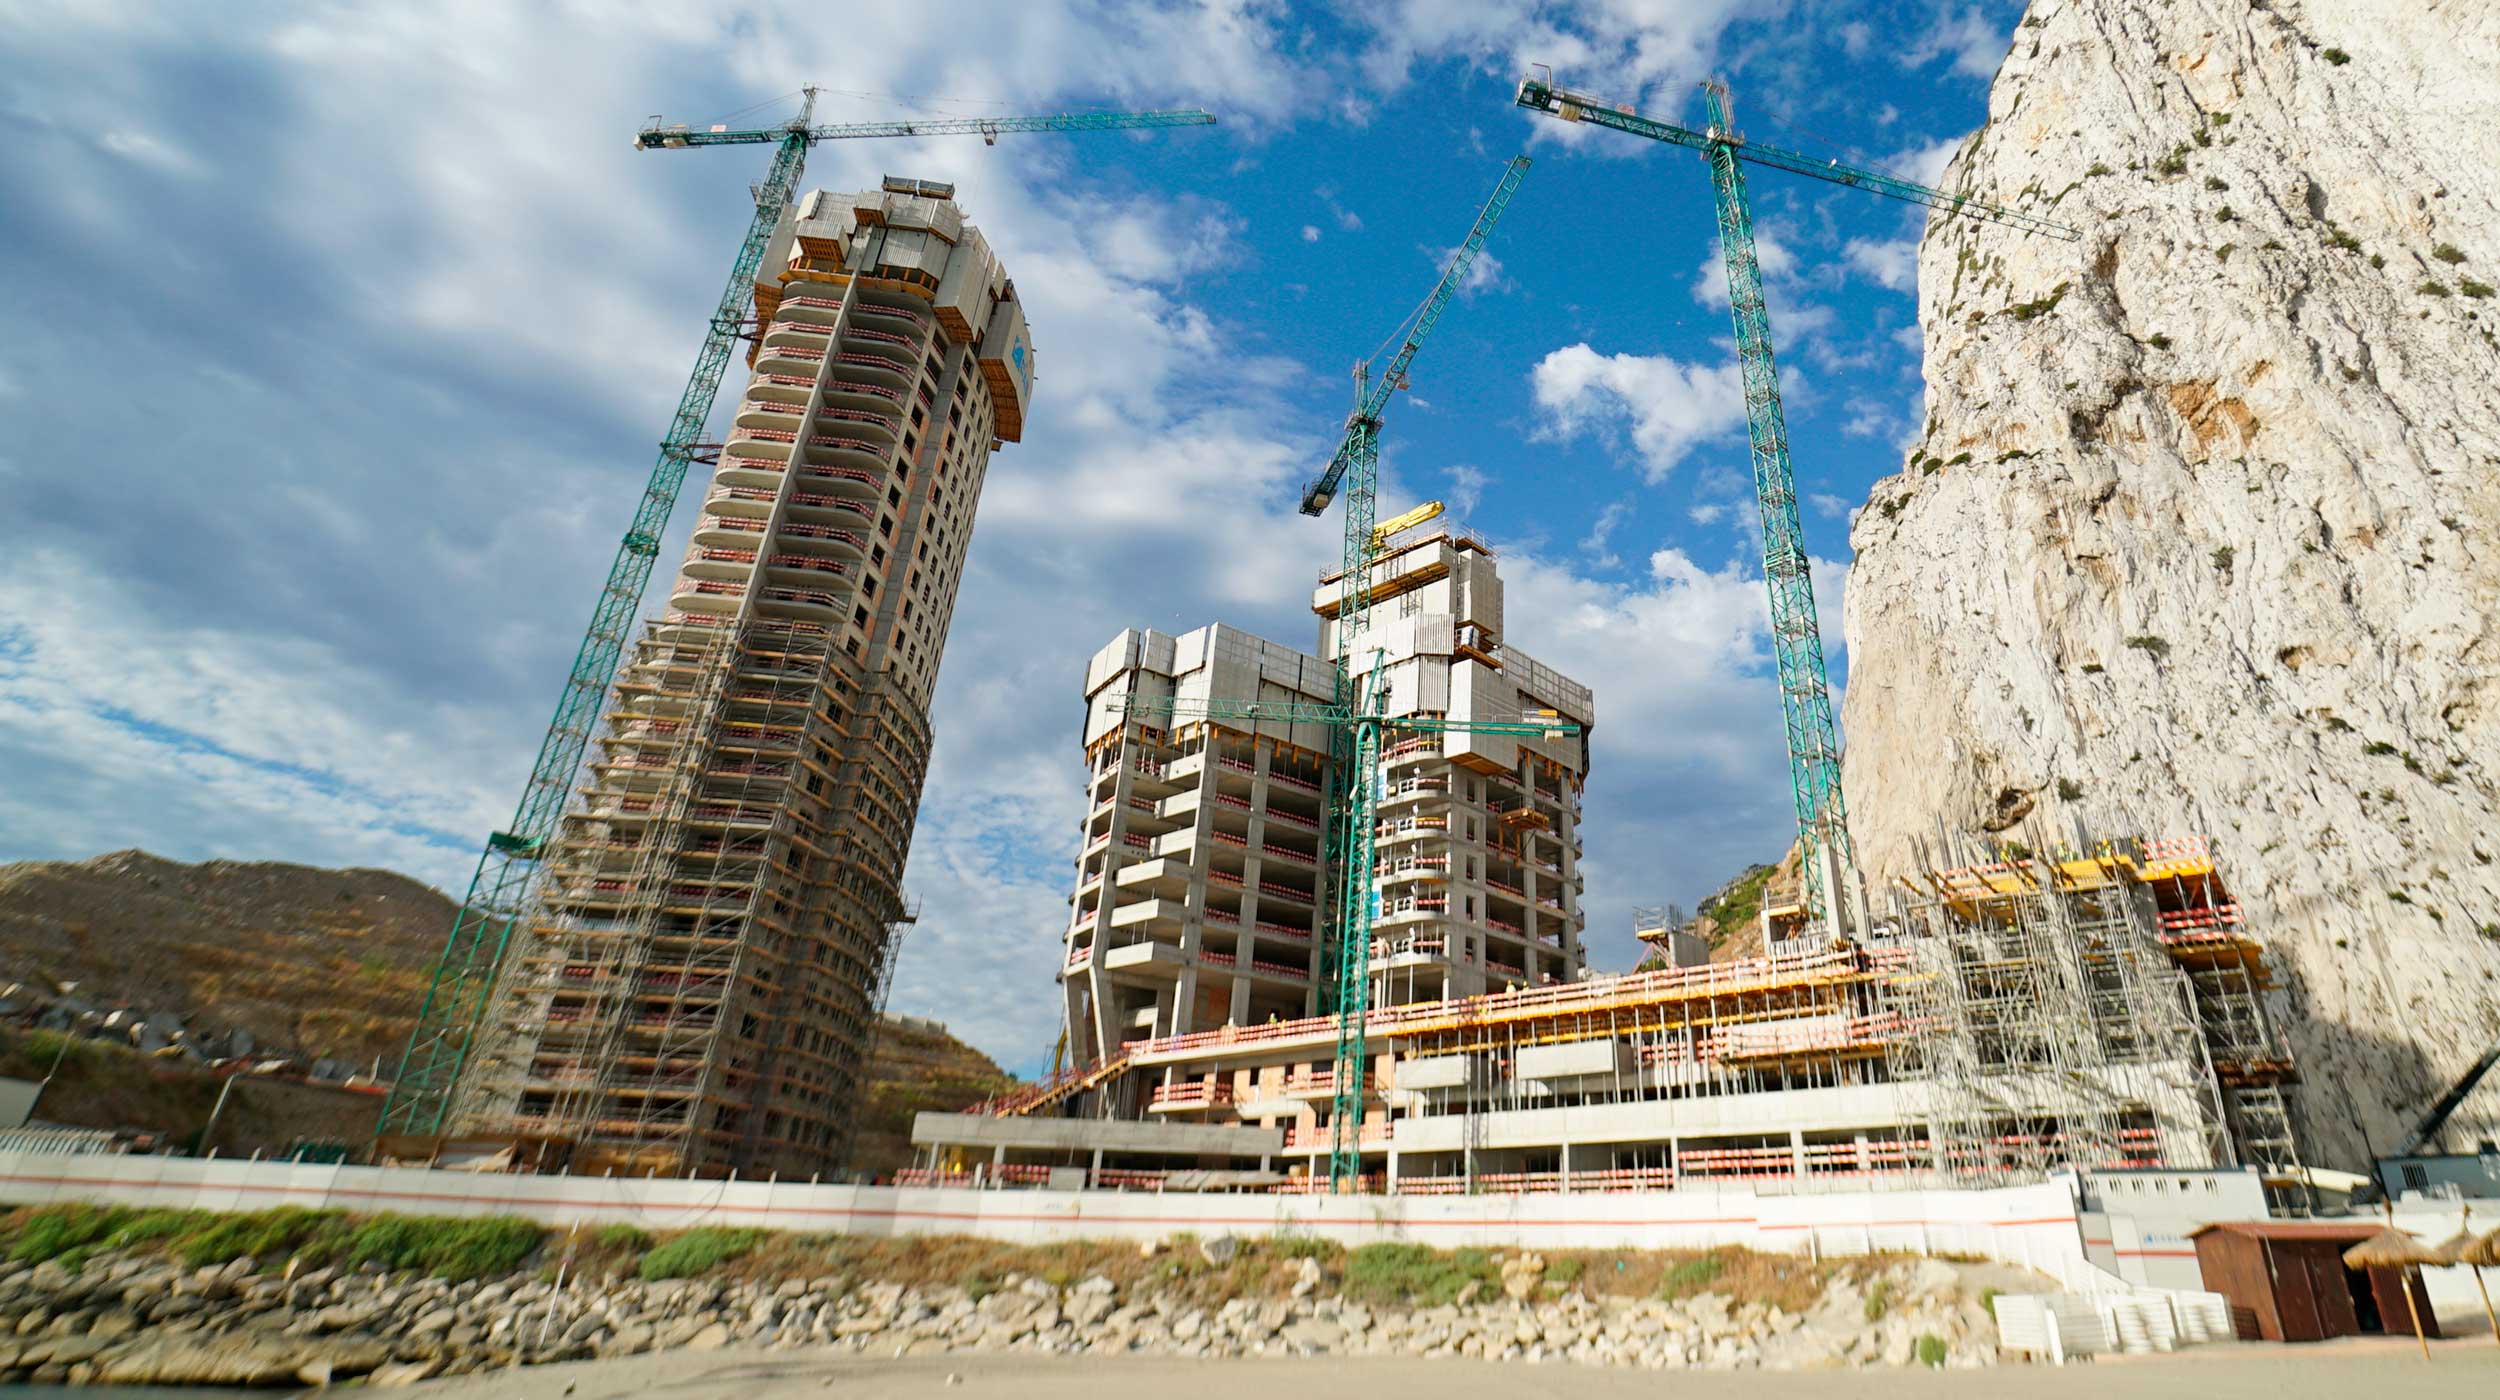 HCT Gibraltar es un proyecto de 665 viviendas de protección oficial desarrollado y promovido por el Gobierno de Gibraltar, el más importante en edificación residencial en la actualidad y en próximos años.